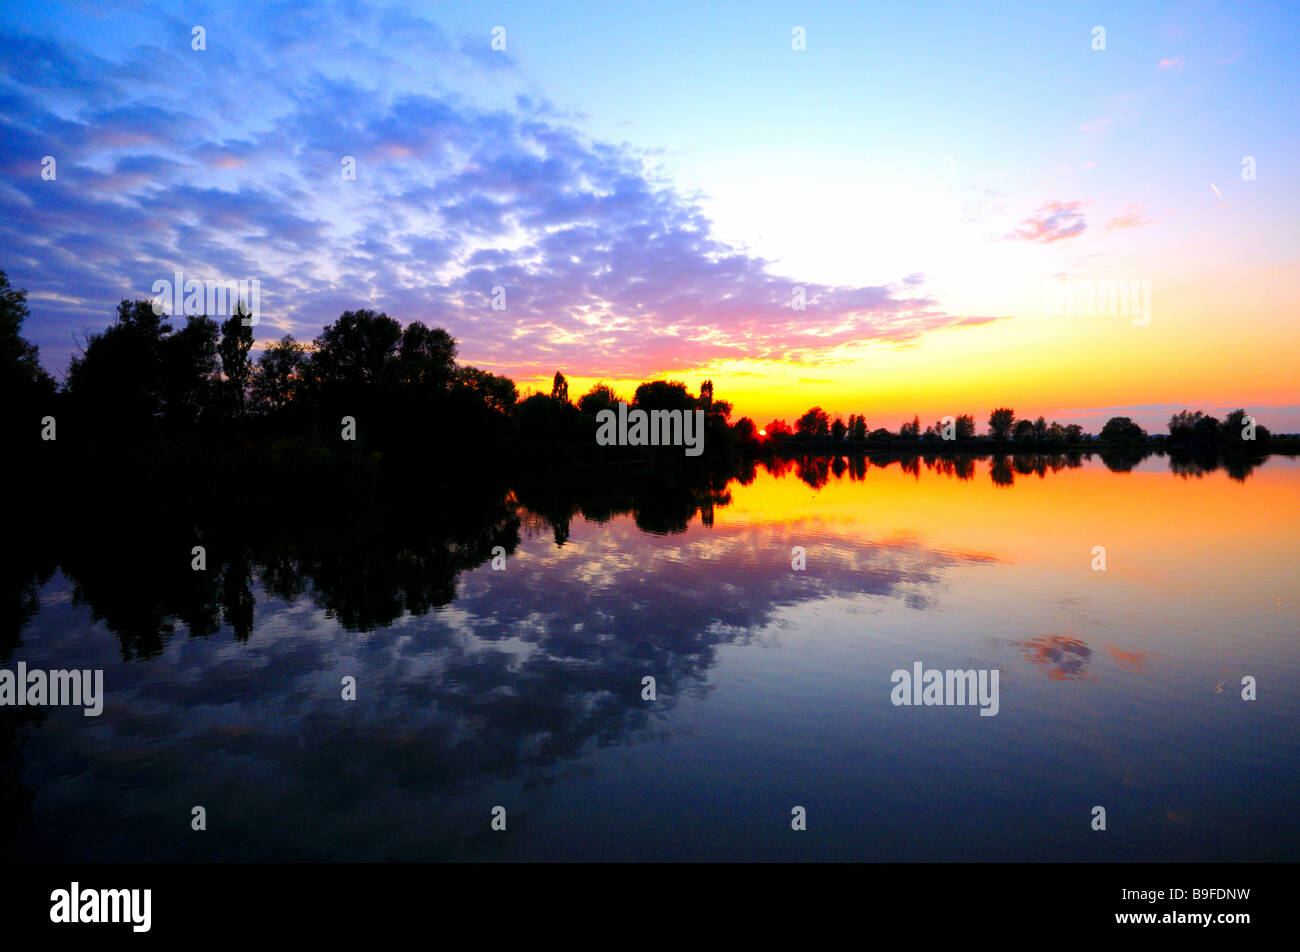 Sunset over lake, Altmuhl Lake, Bavaria, Germany Stock Photo